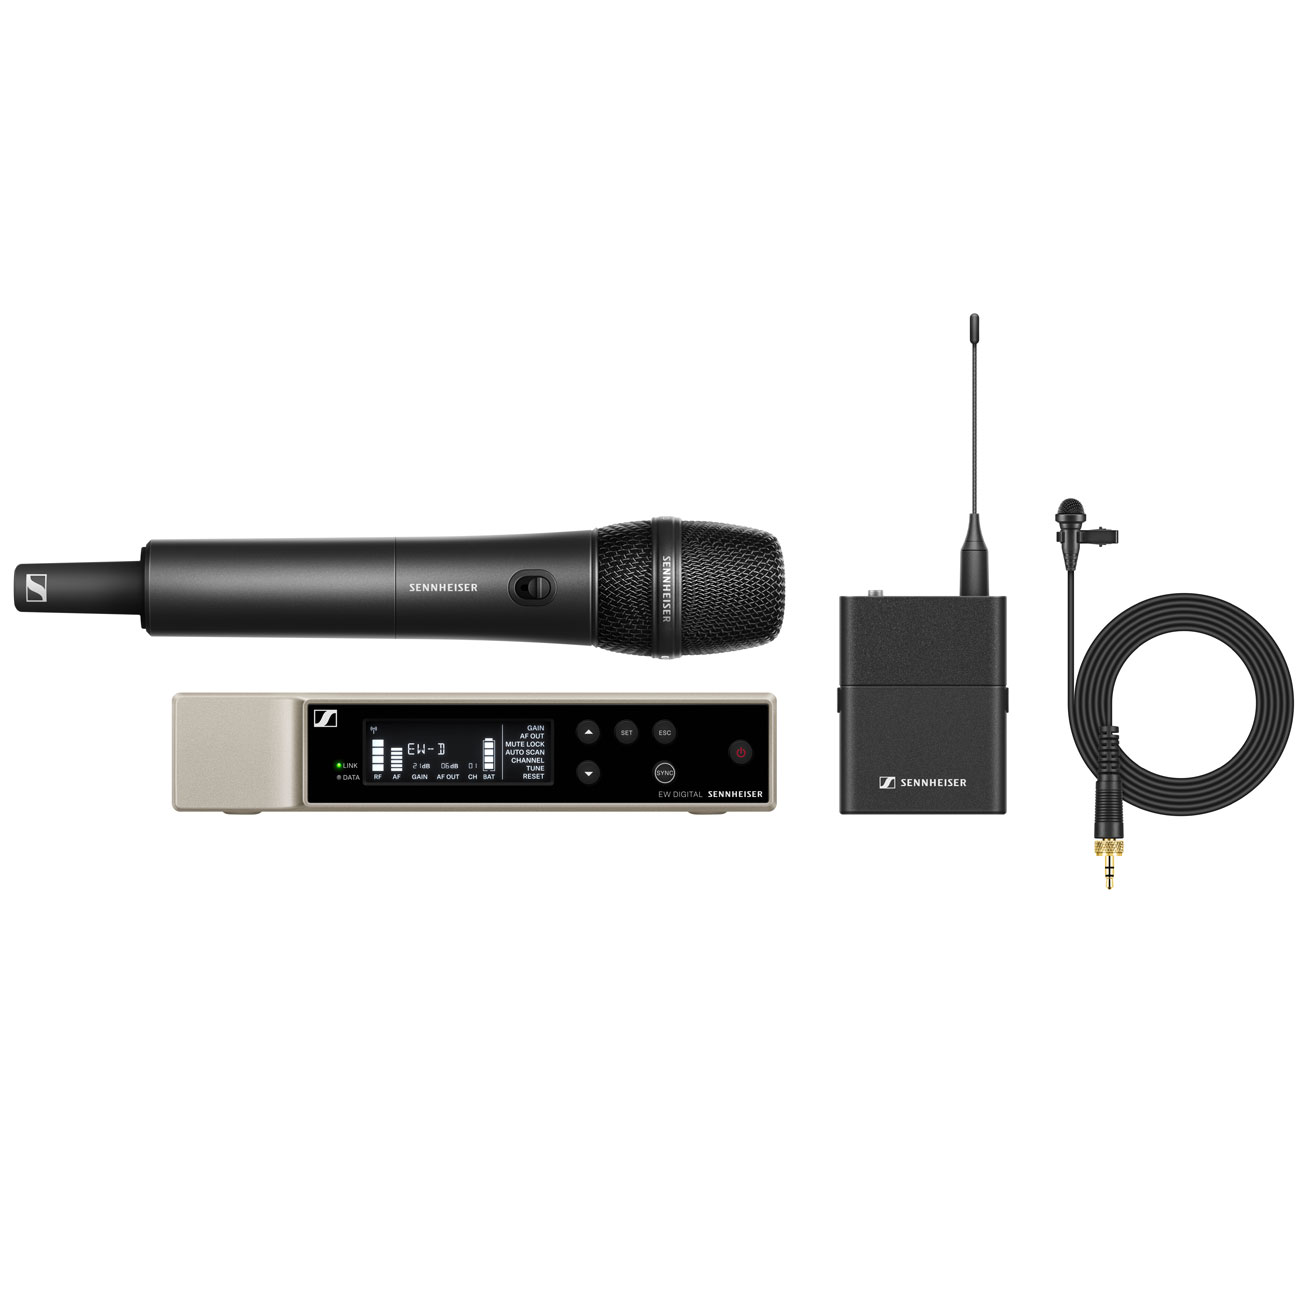 Sennheiser EW-D ME2/835-S SET (Q1-6) Digitales drahtloses Ansteck-/Handmikrofon-Kombi-Set